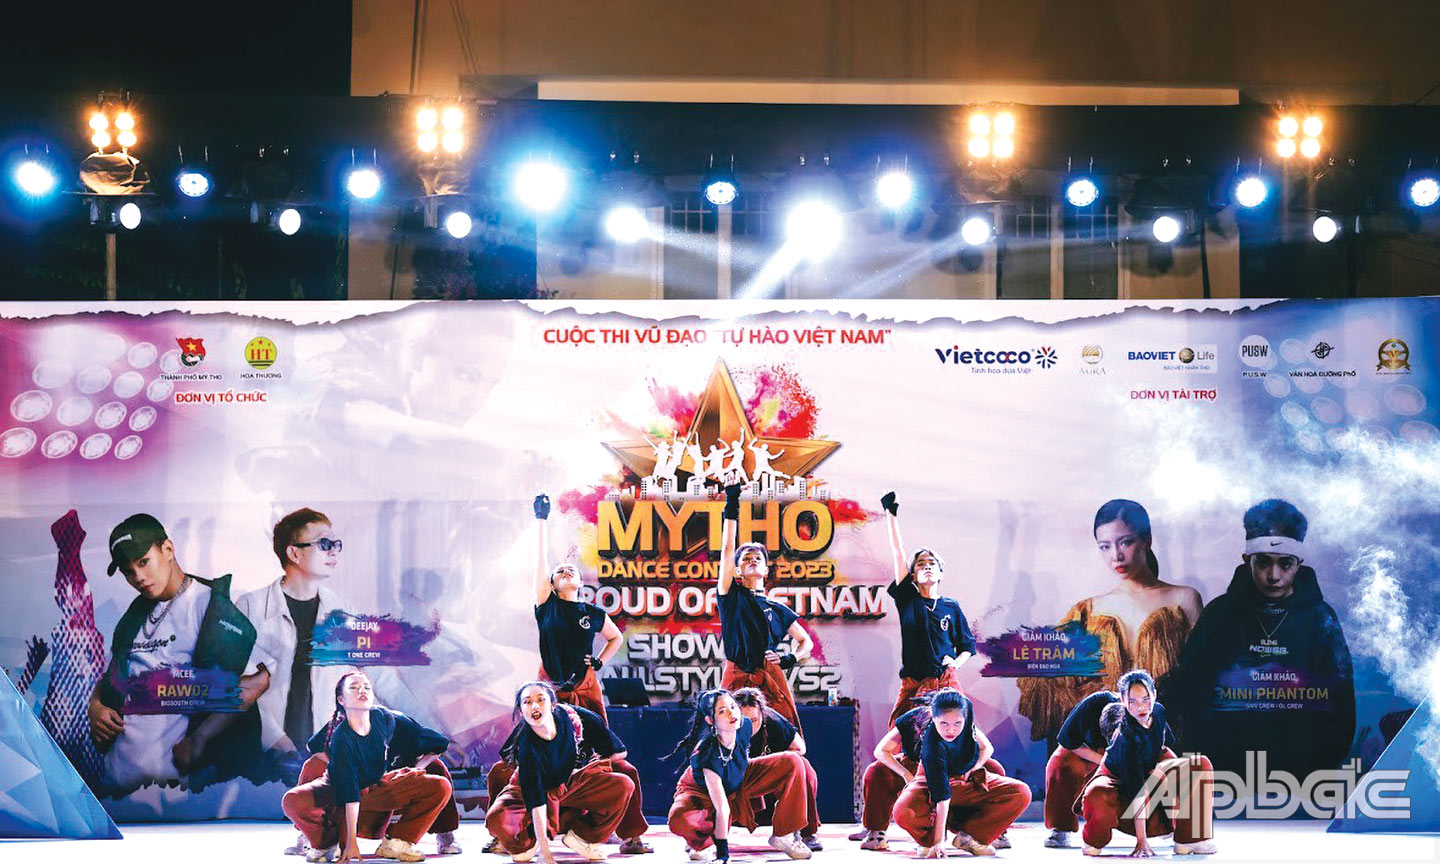 Cuộc thi vũ đạo “Tự hào Việt Nam” sẽ diễn ra tại Lễ hội.